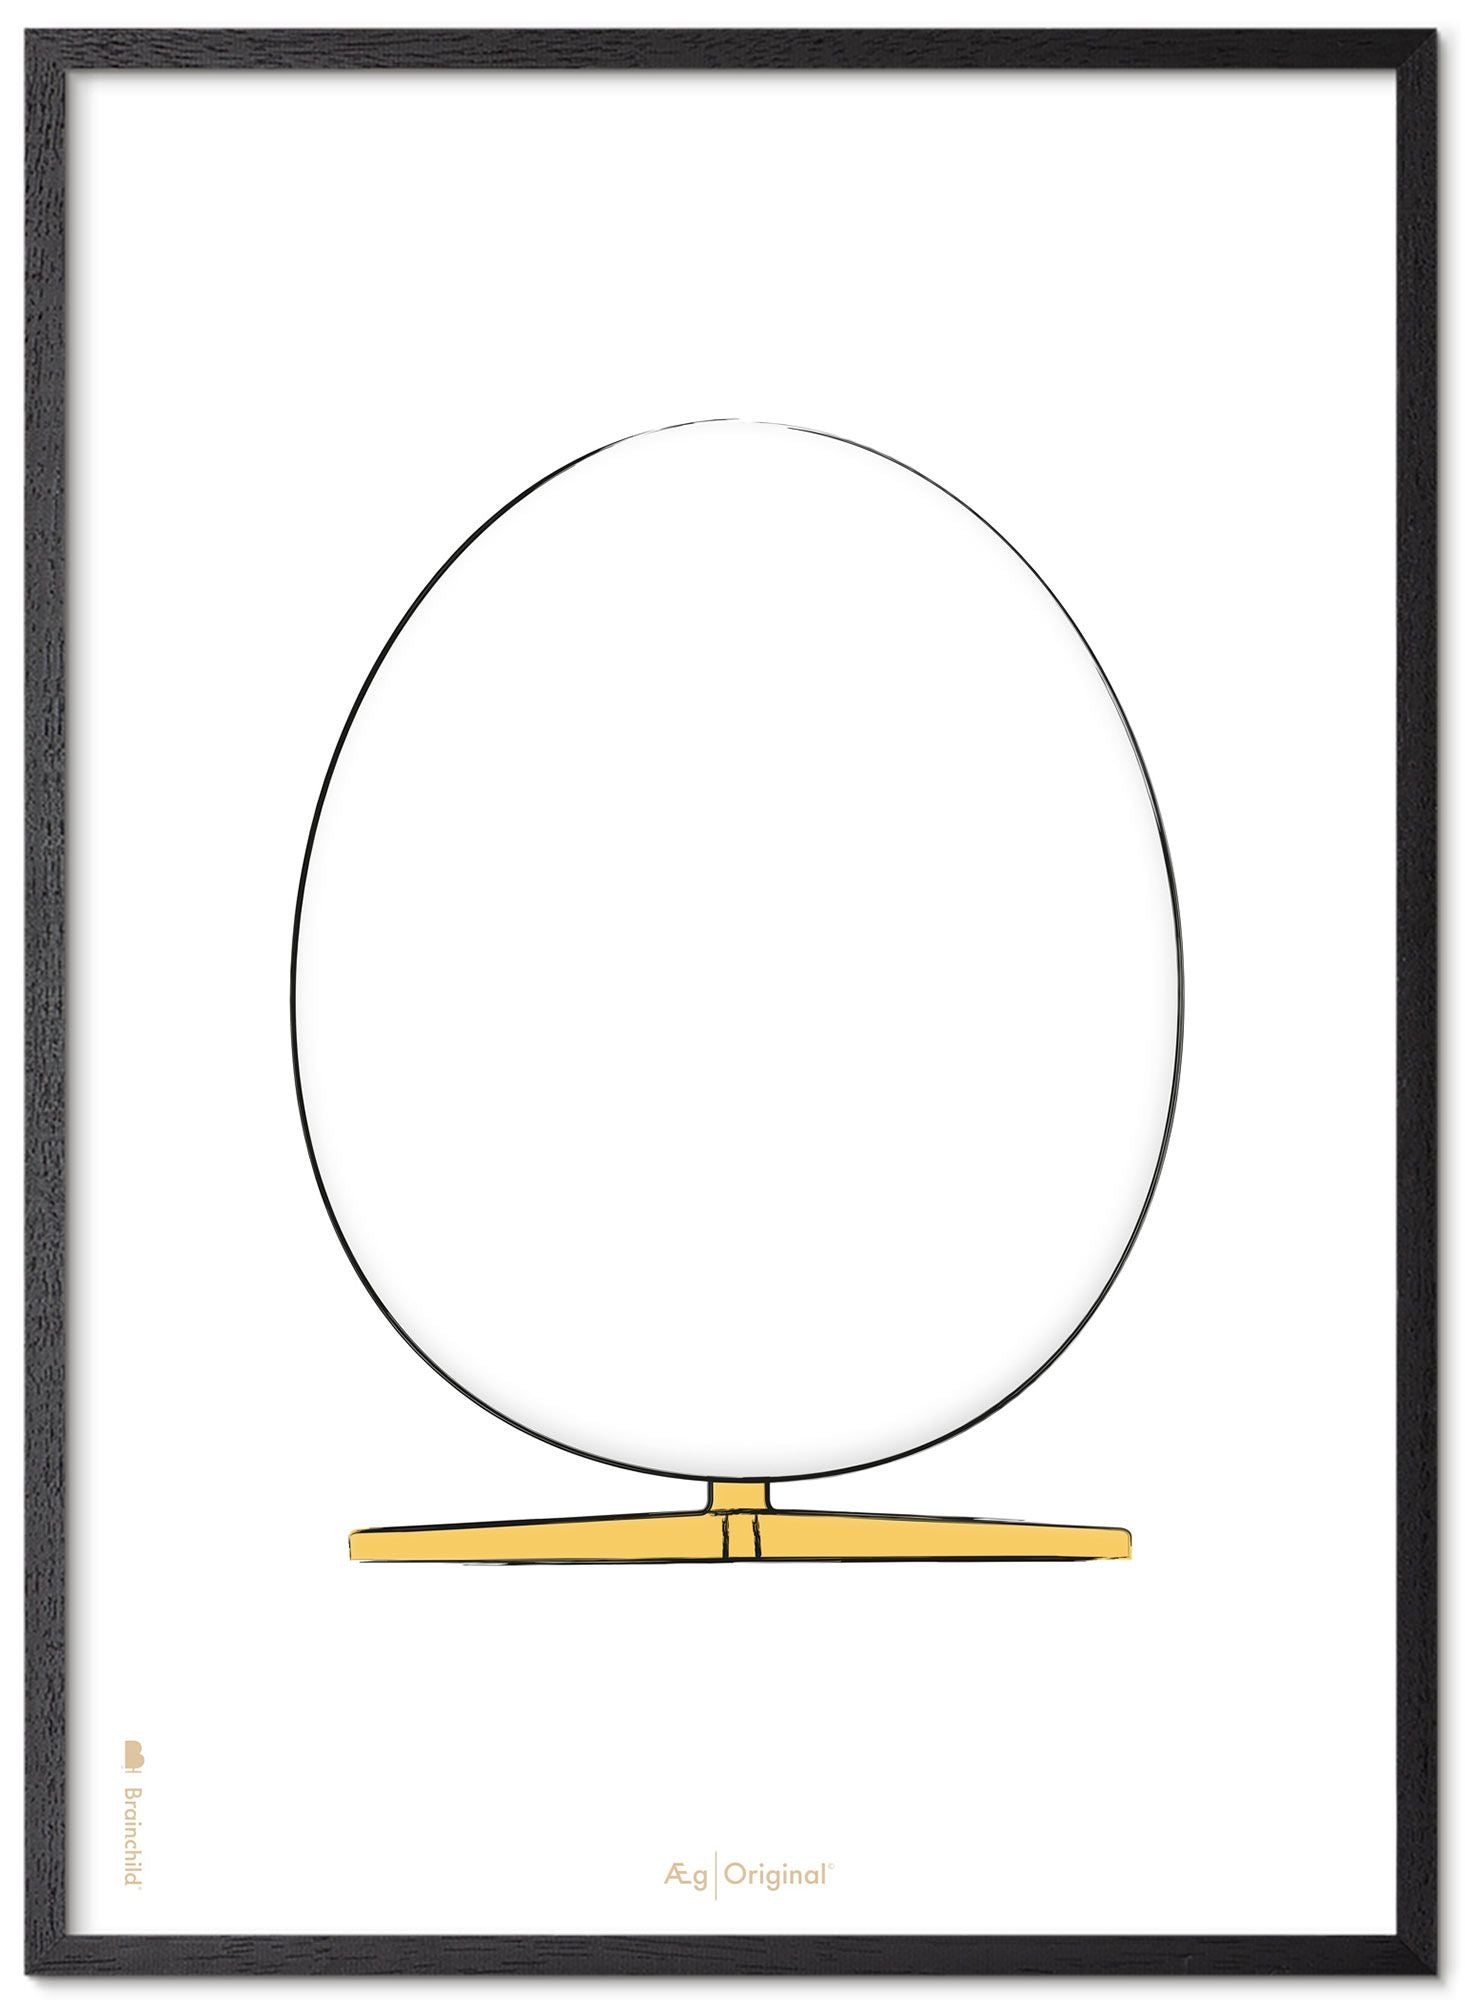 Prepare el marco de póster de boceto de diseño de huevo hecho de madera lacada negra de 70x100 cm, fondo blanco